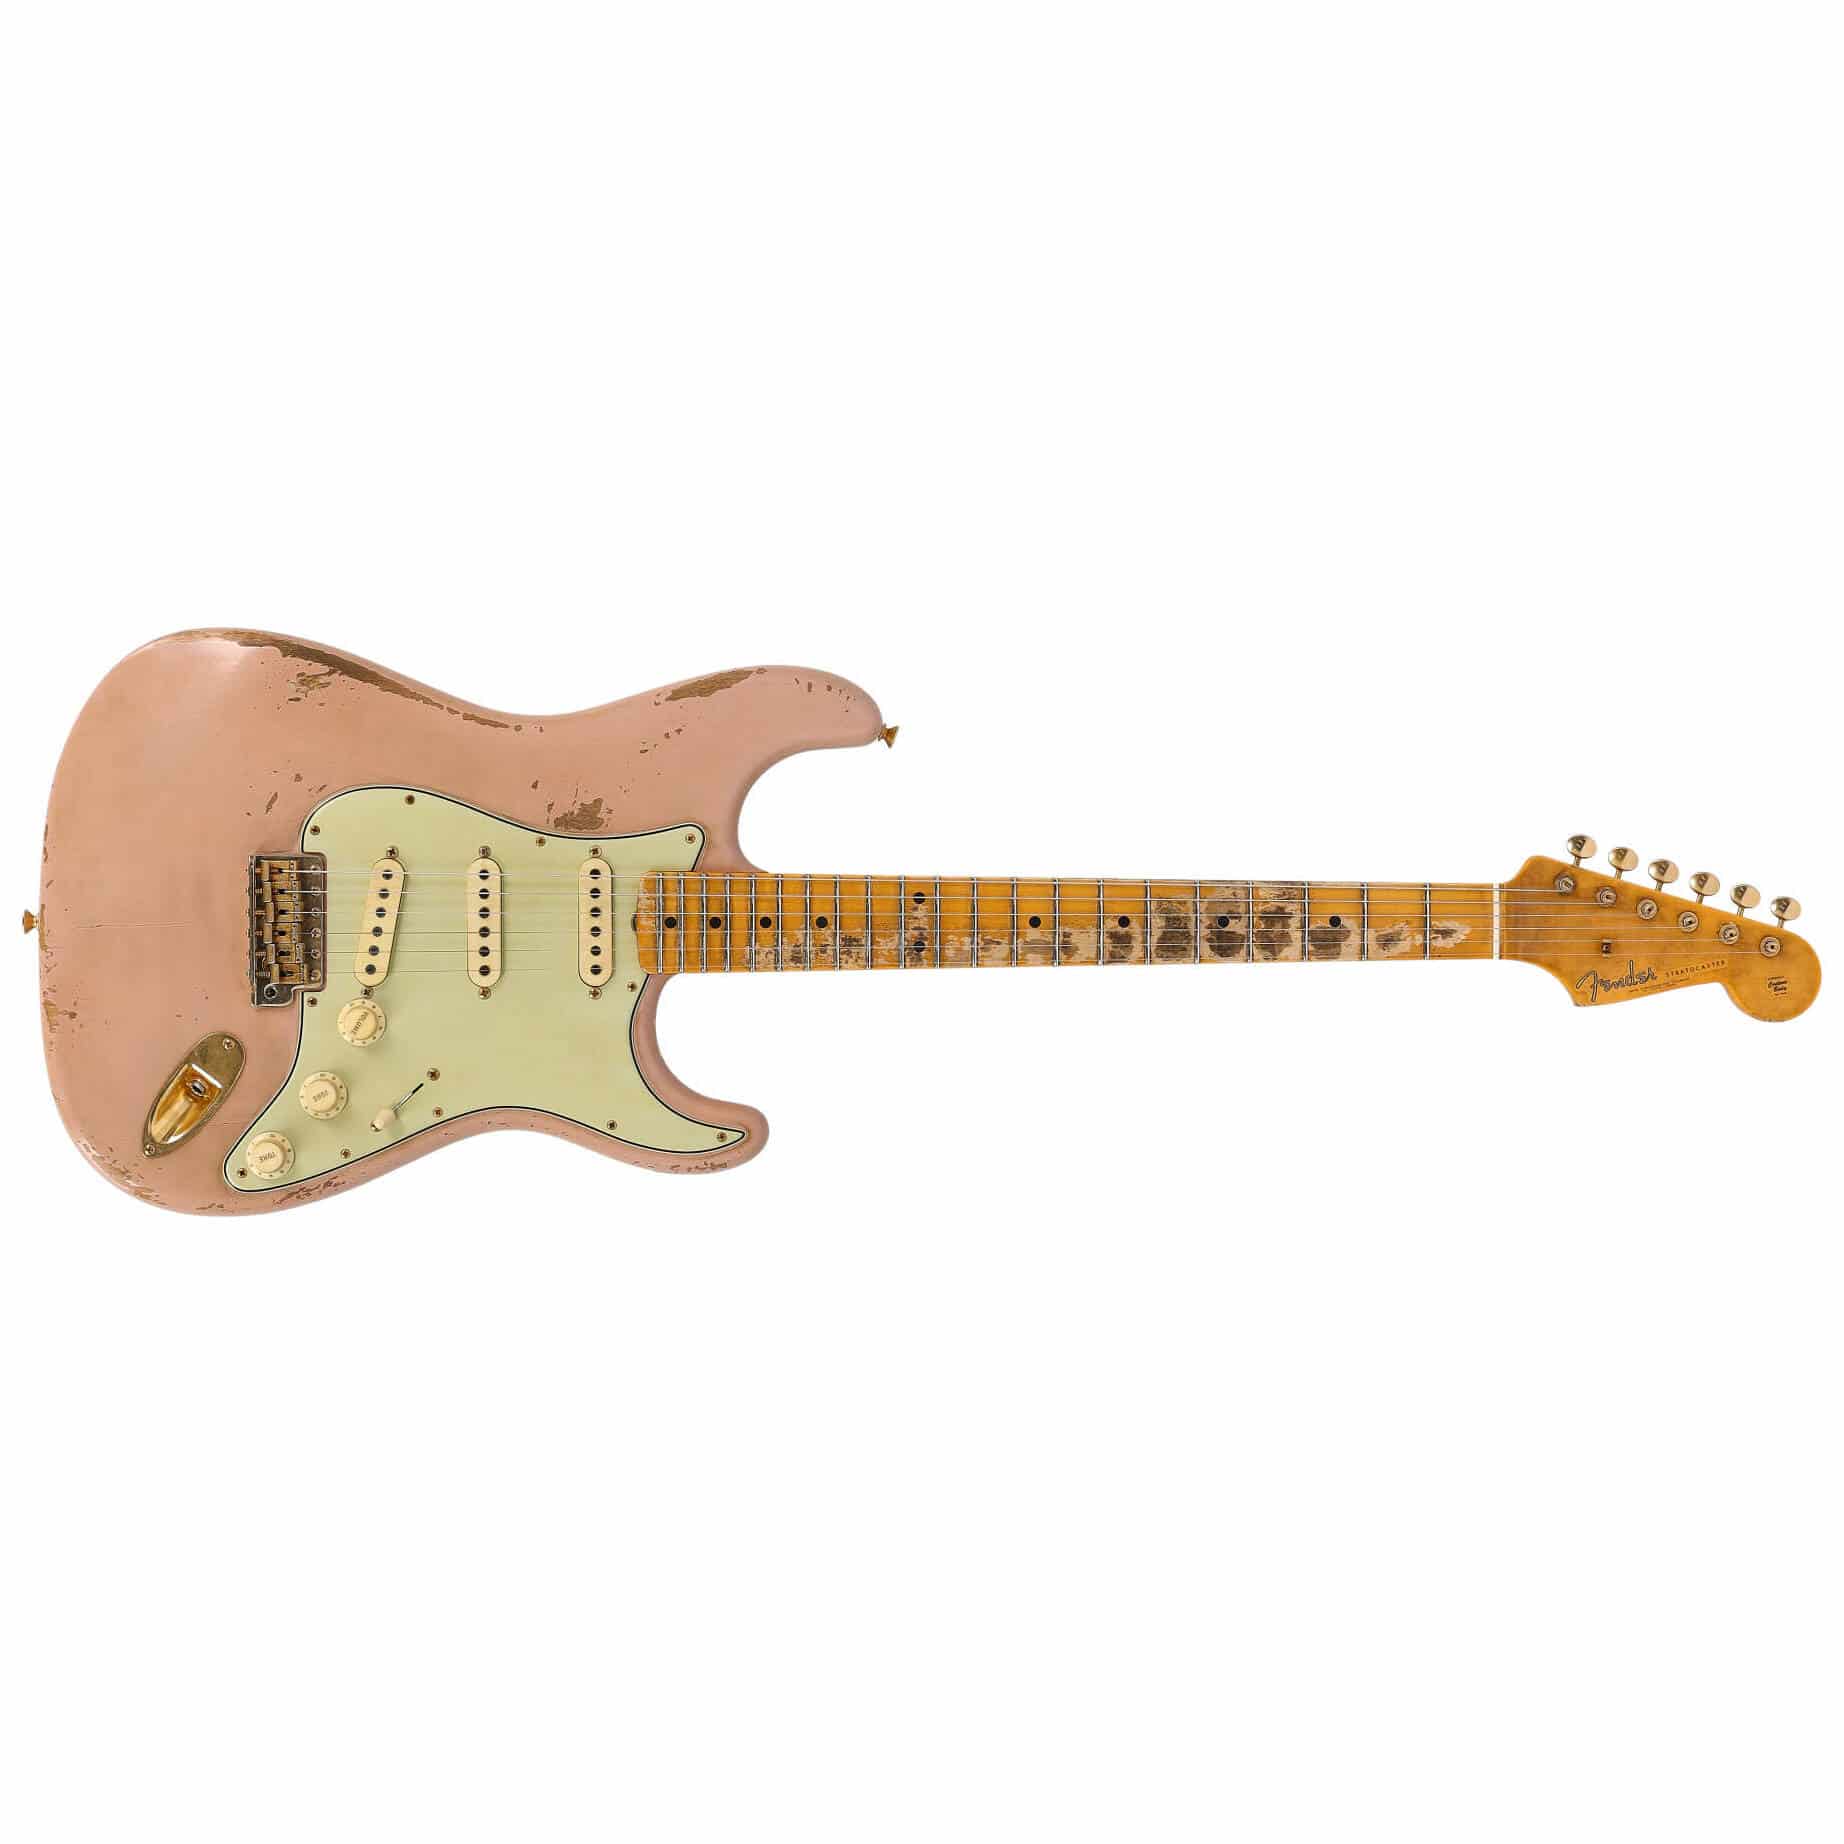 Fender Custom Shop 62 Poblano Stratocaster GH Relic ADSP Masterbuilt Andy Hicks 1